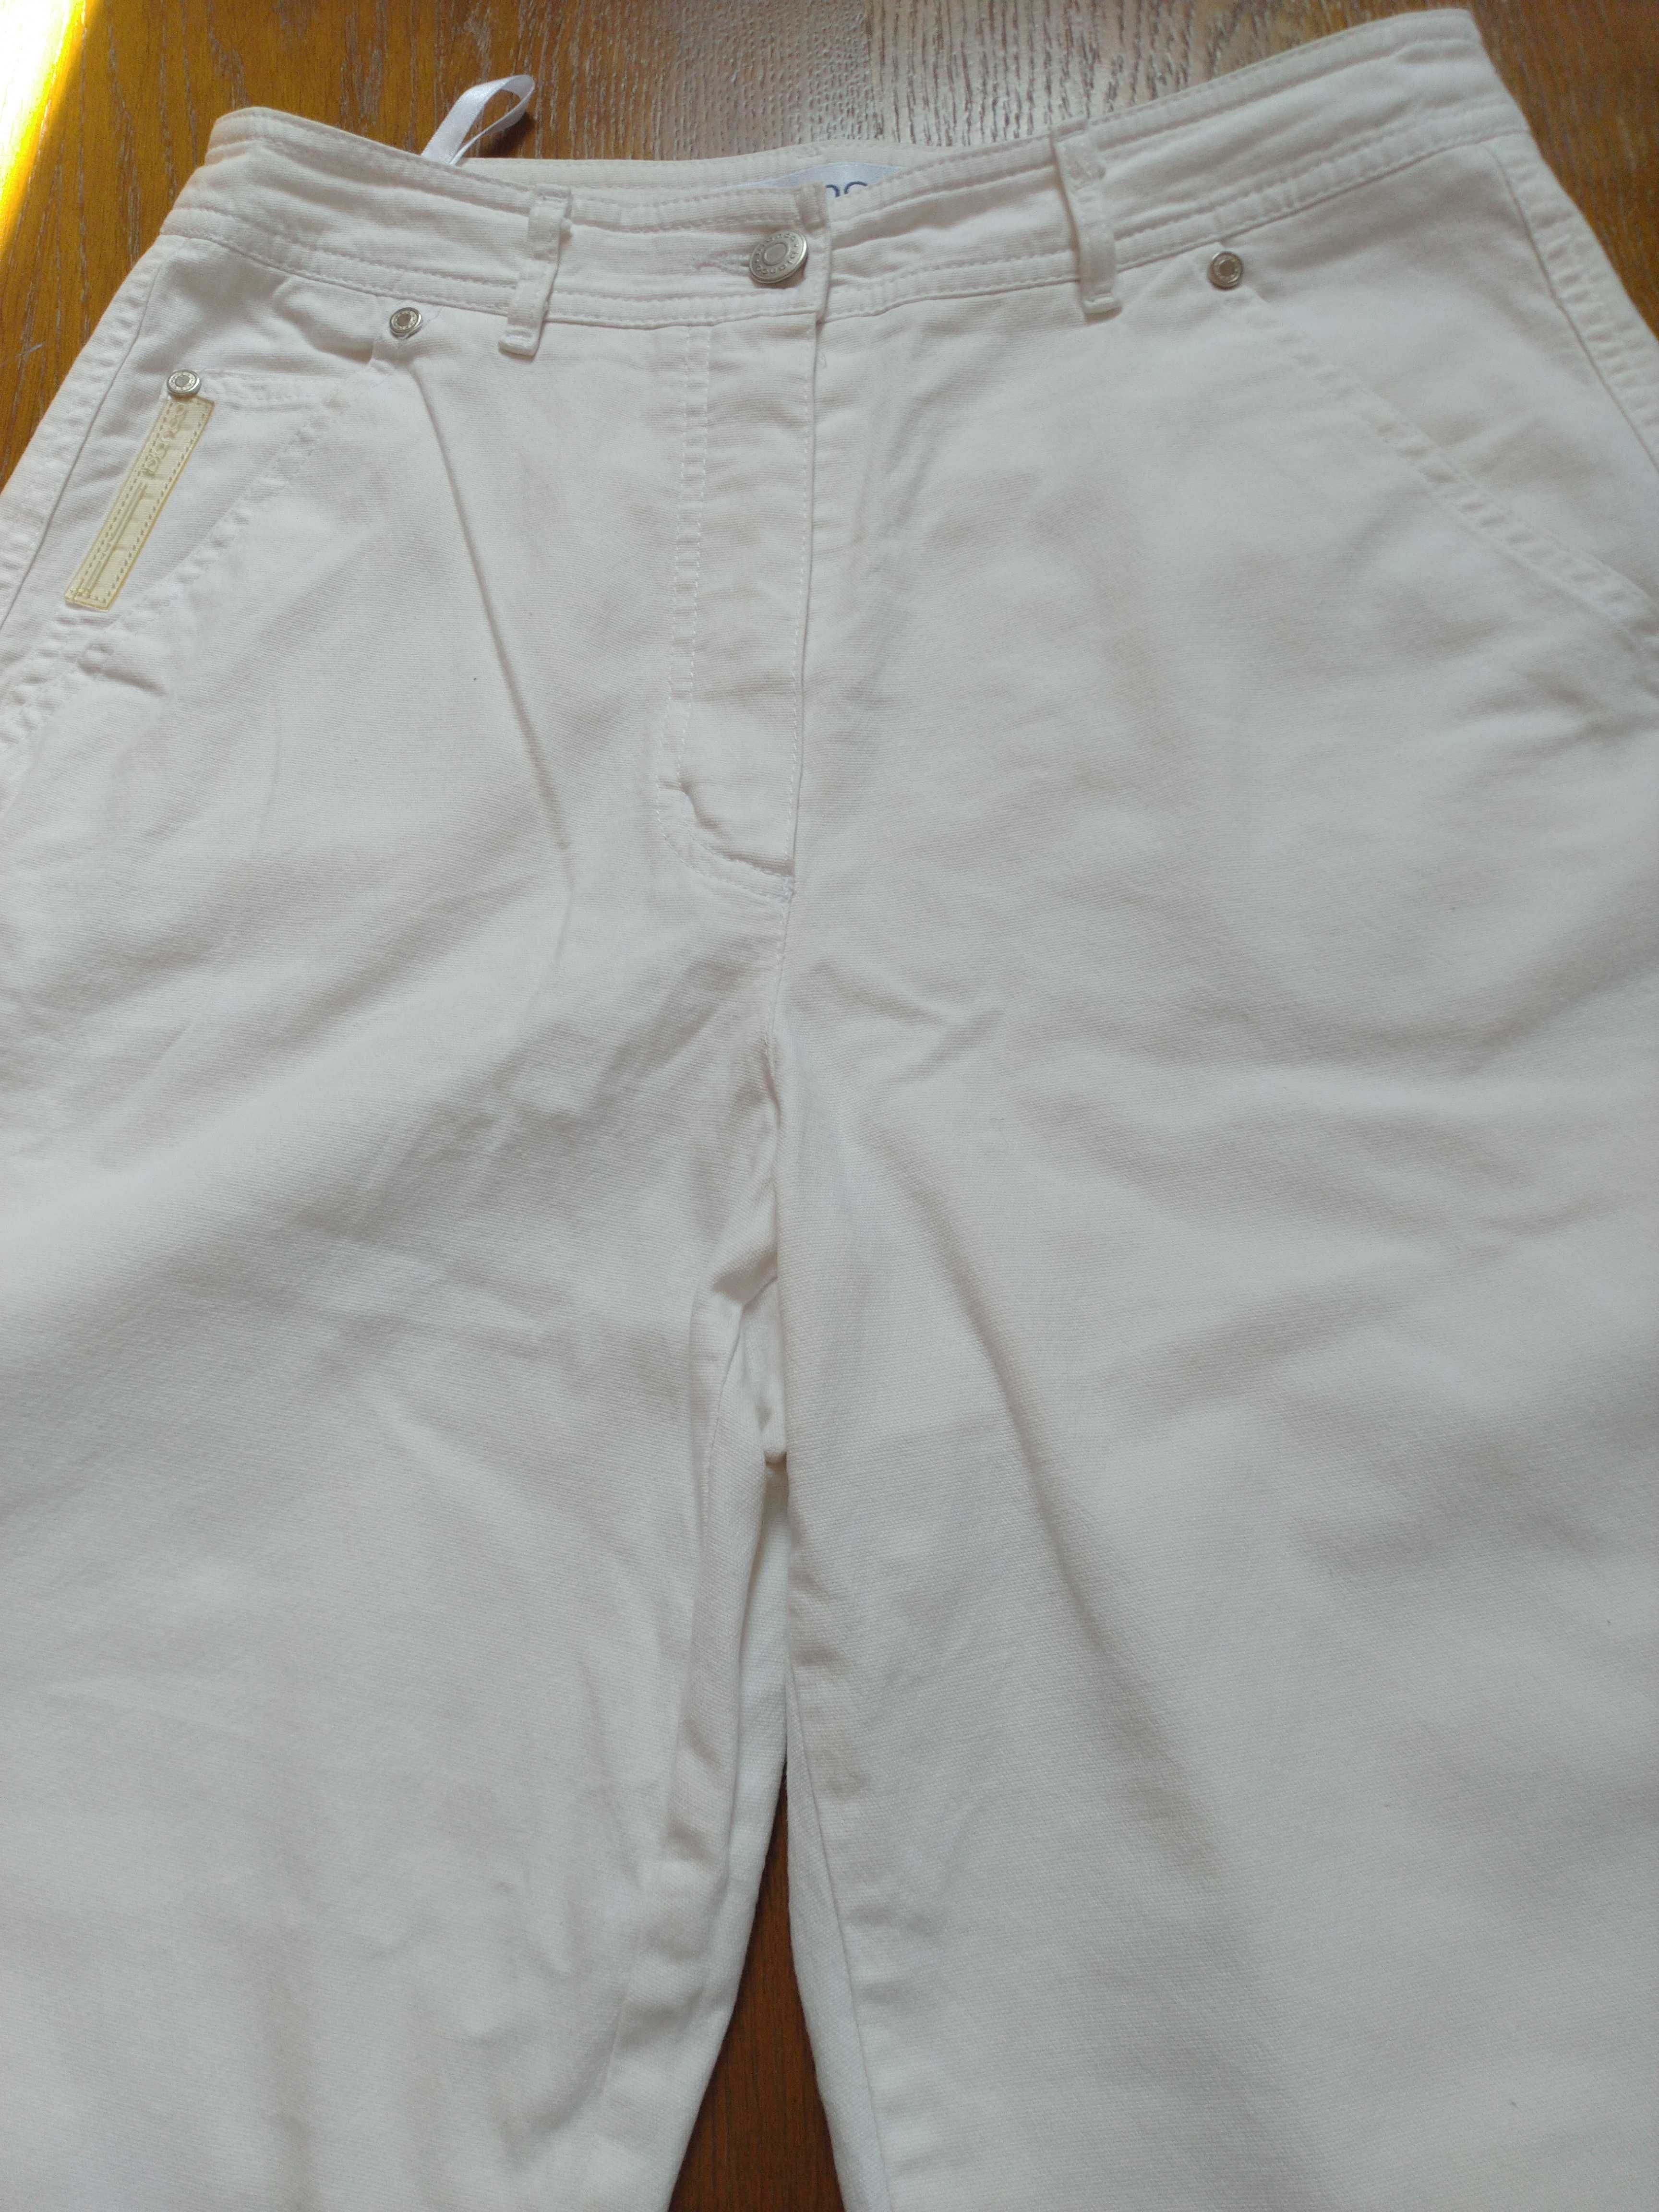 Spodnie białe prawie nowe